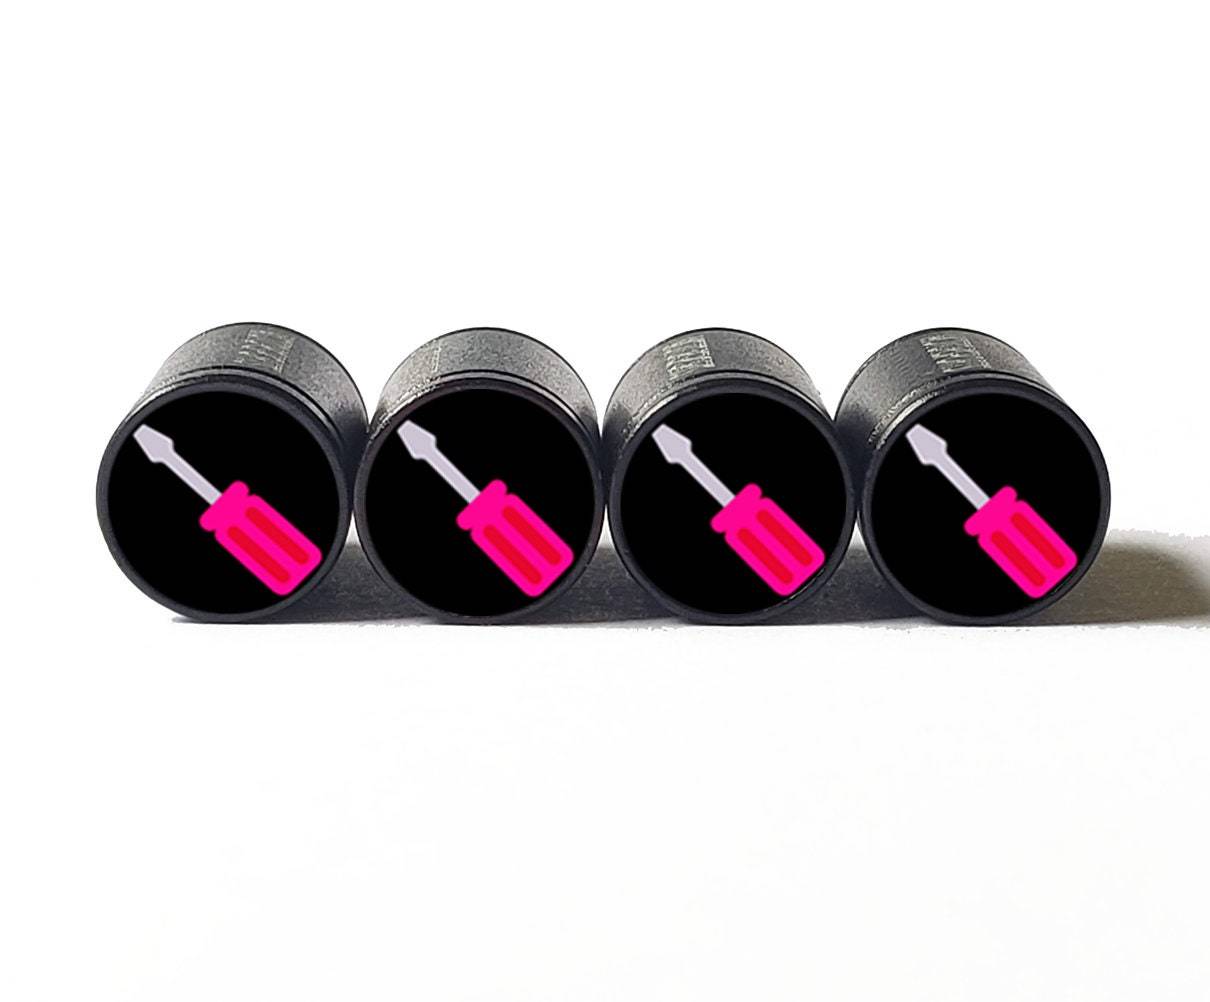 Screwdriver Emoji Tire Valve Stem Caps - Black Aluminum - Set of Four - $15.99